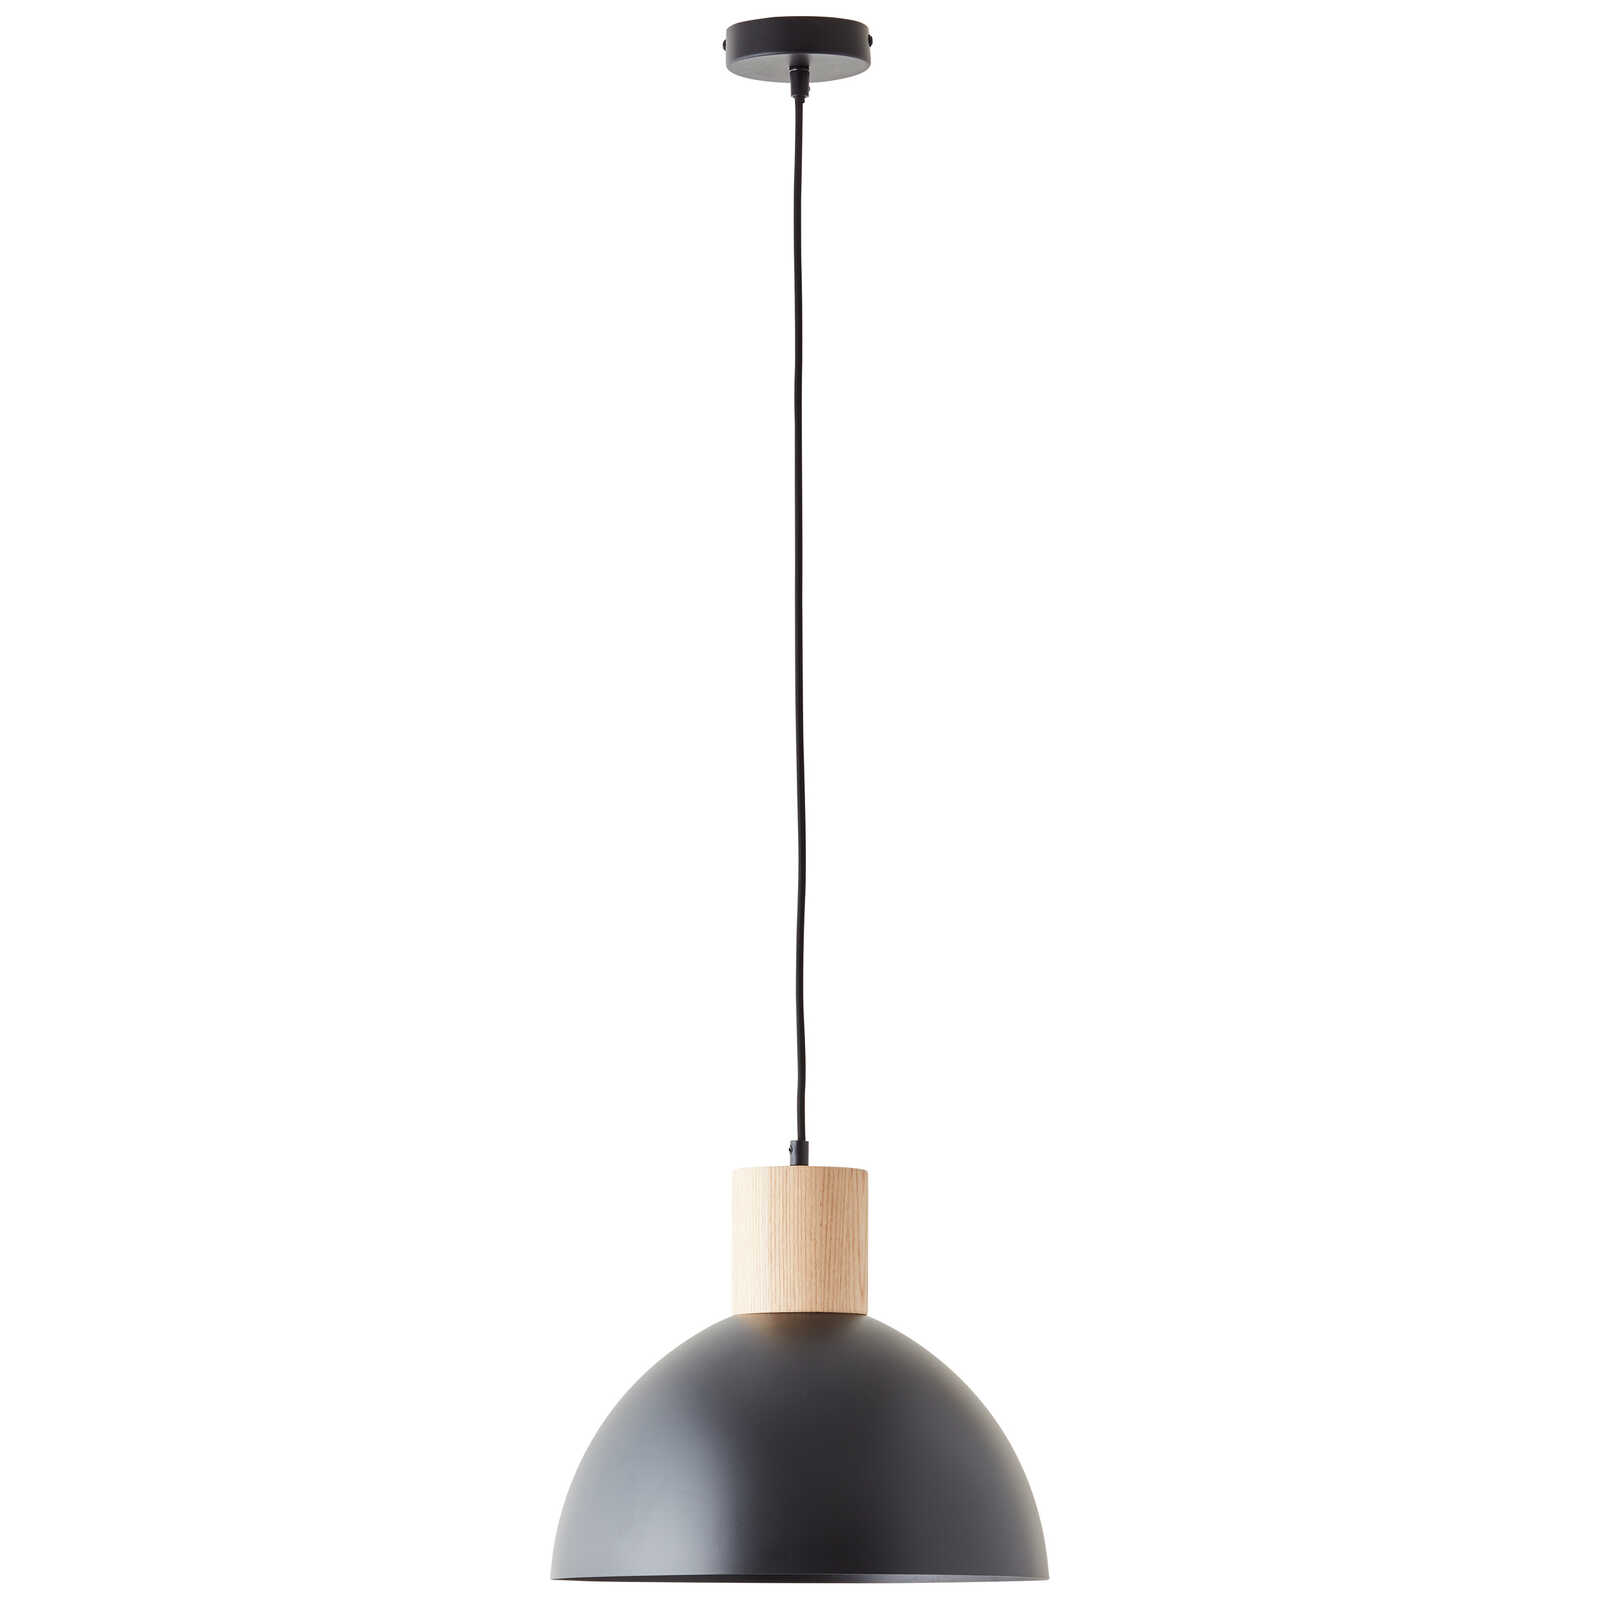             Lámpara colgante de madera - Emil 6 - Marrón
        